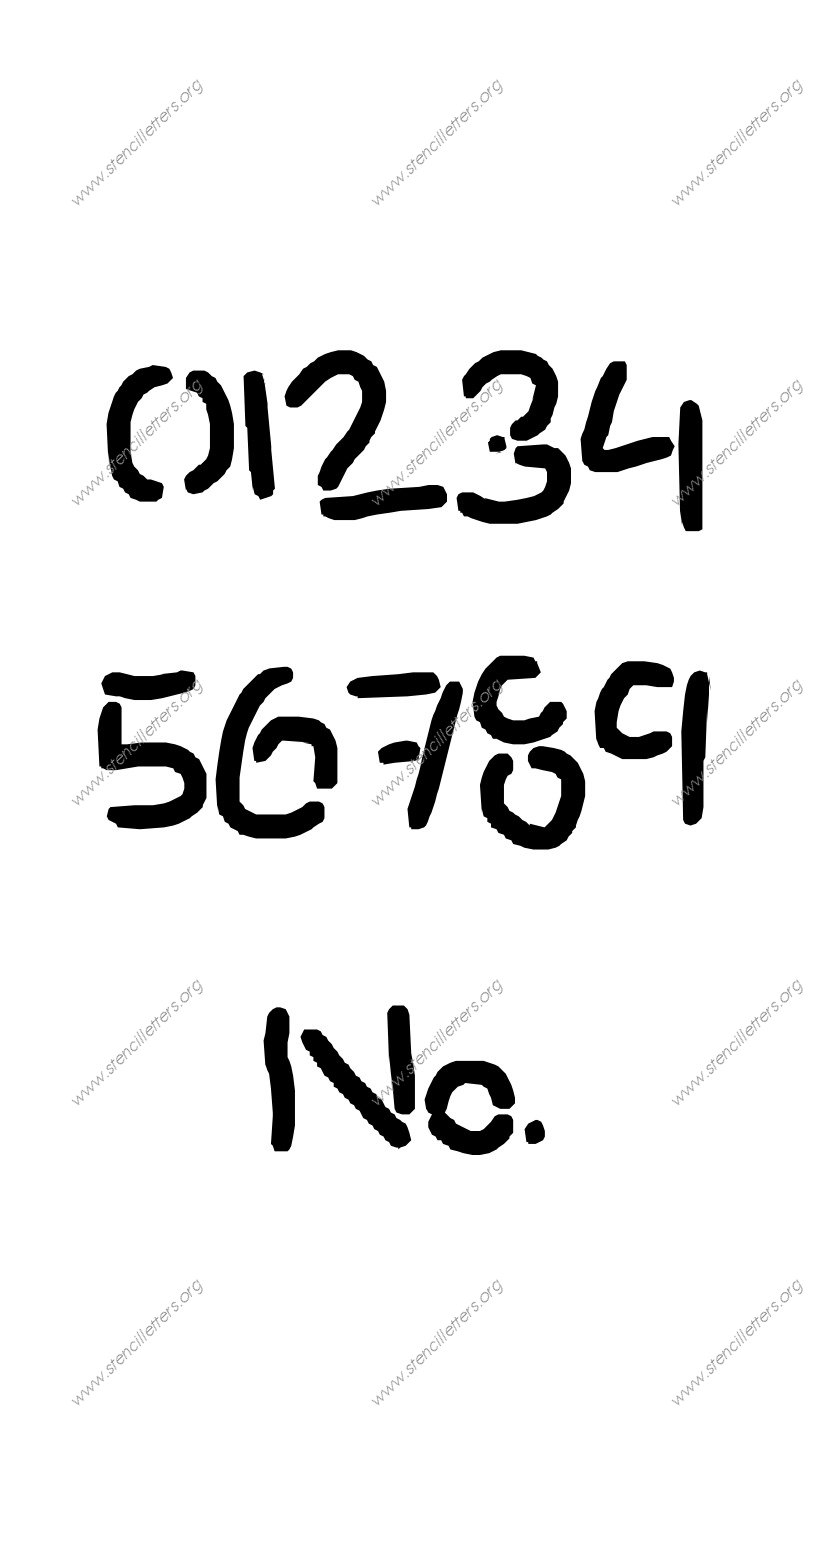 Rocky Novelty Number Stencil